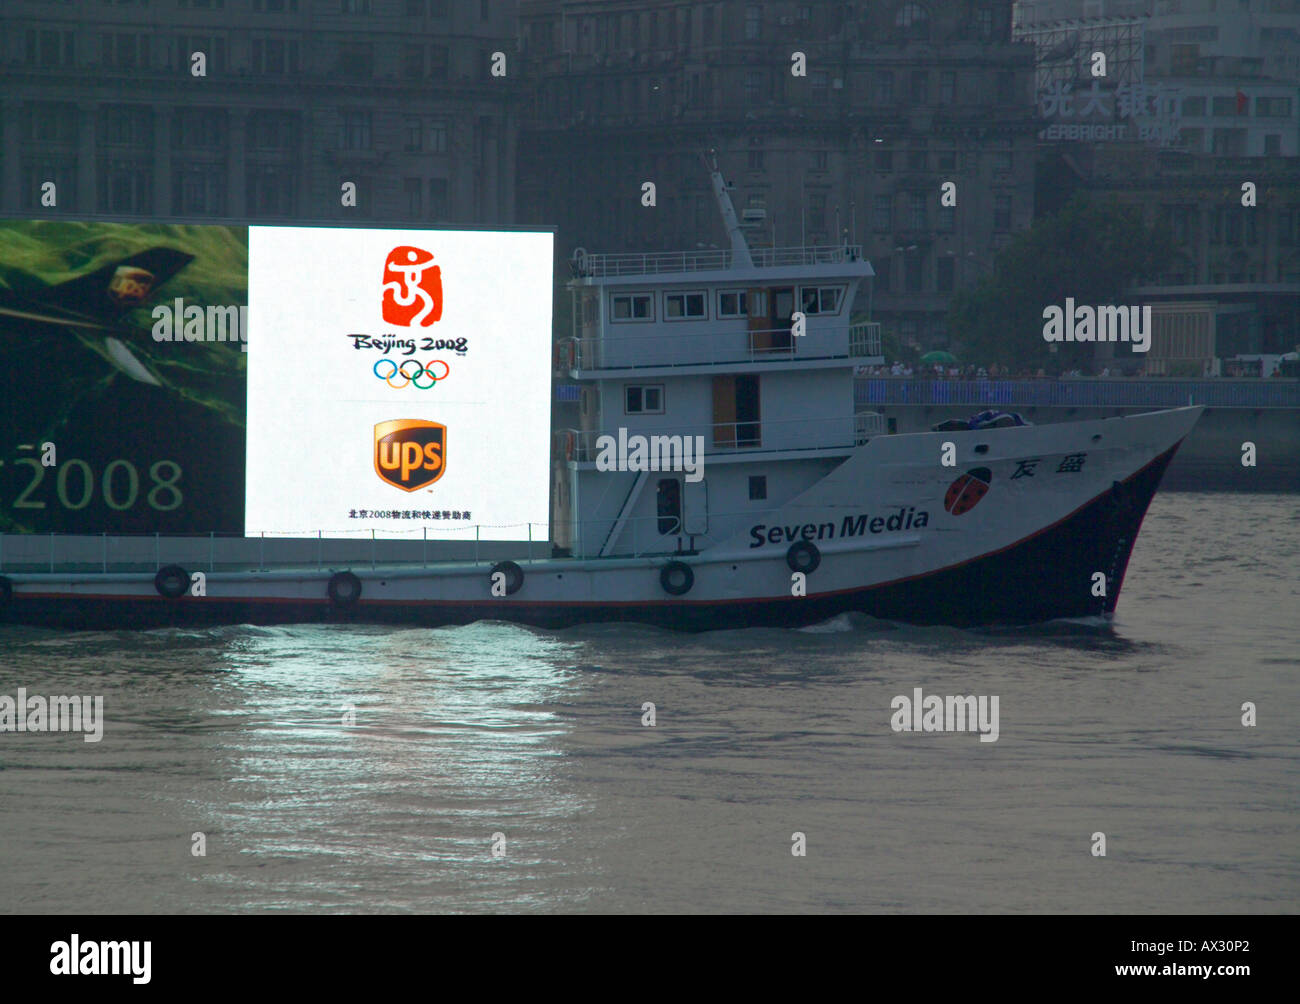 Anzeige für die Olympischen Spiele in Peking 2008 auf Boot Stockfoto